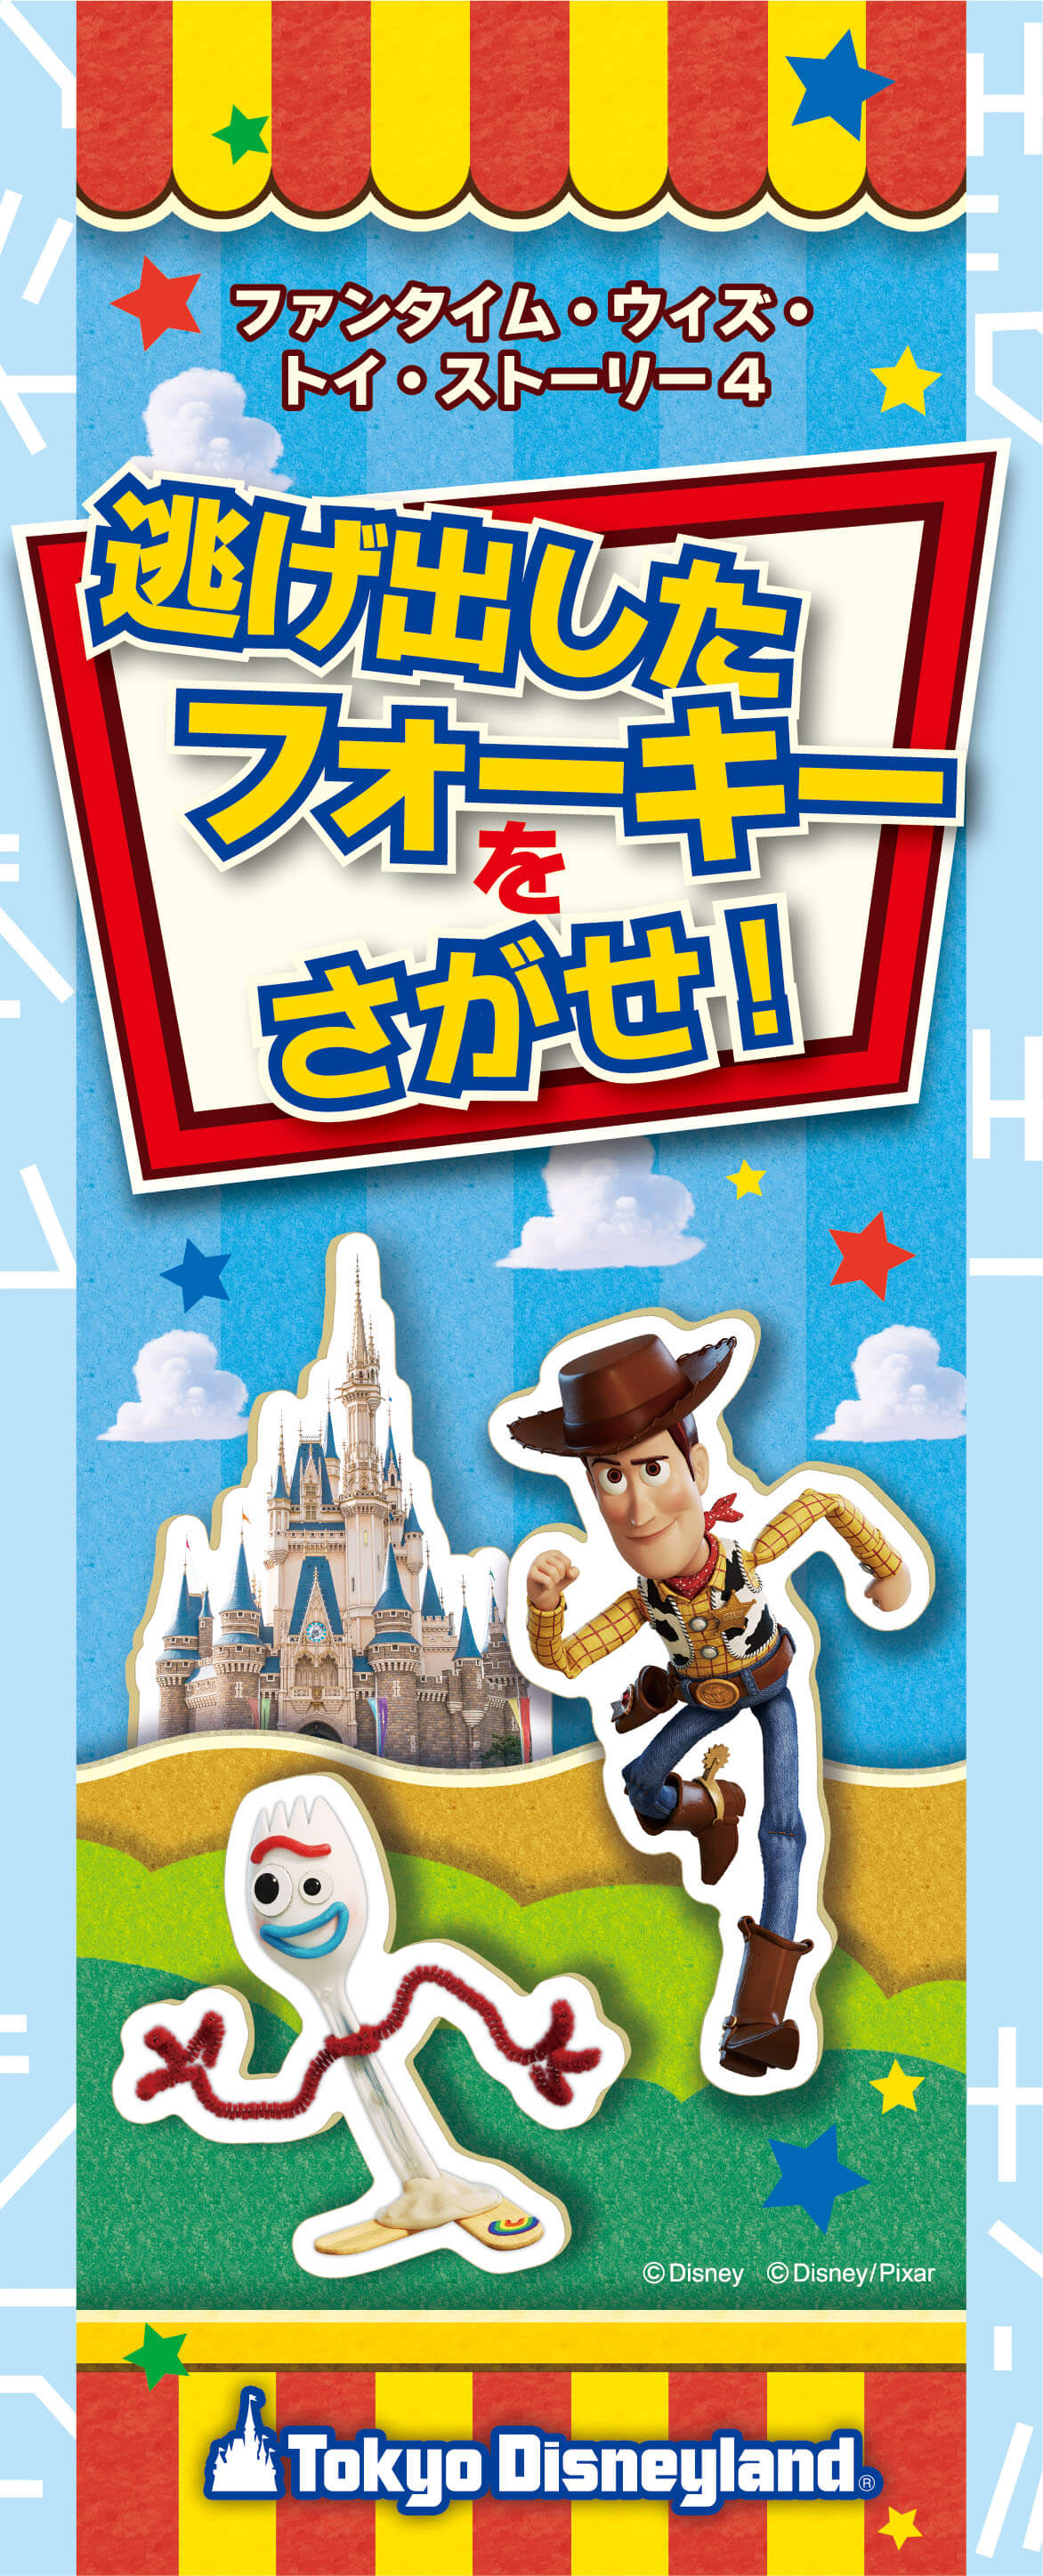 東京ディズニーリゾート で 映画 トイ ストーリー4 の世界が楽しめる新プログラム開催 Moshi Moshi Nippon もしもしにっぽん